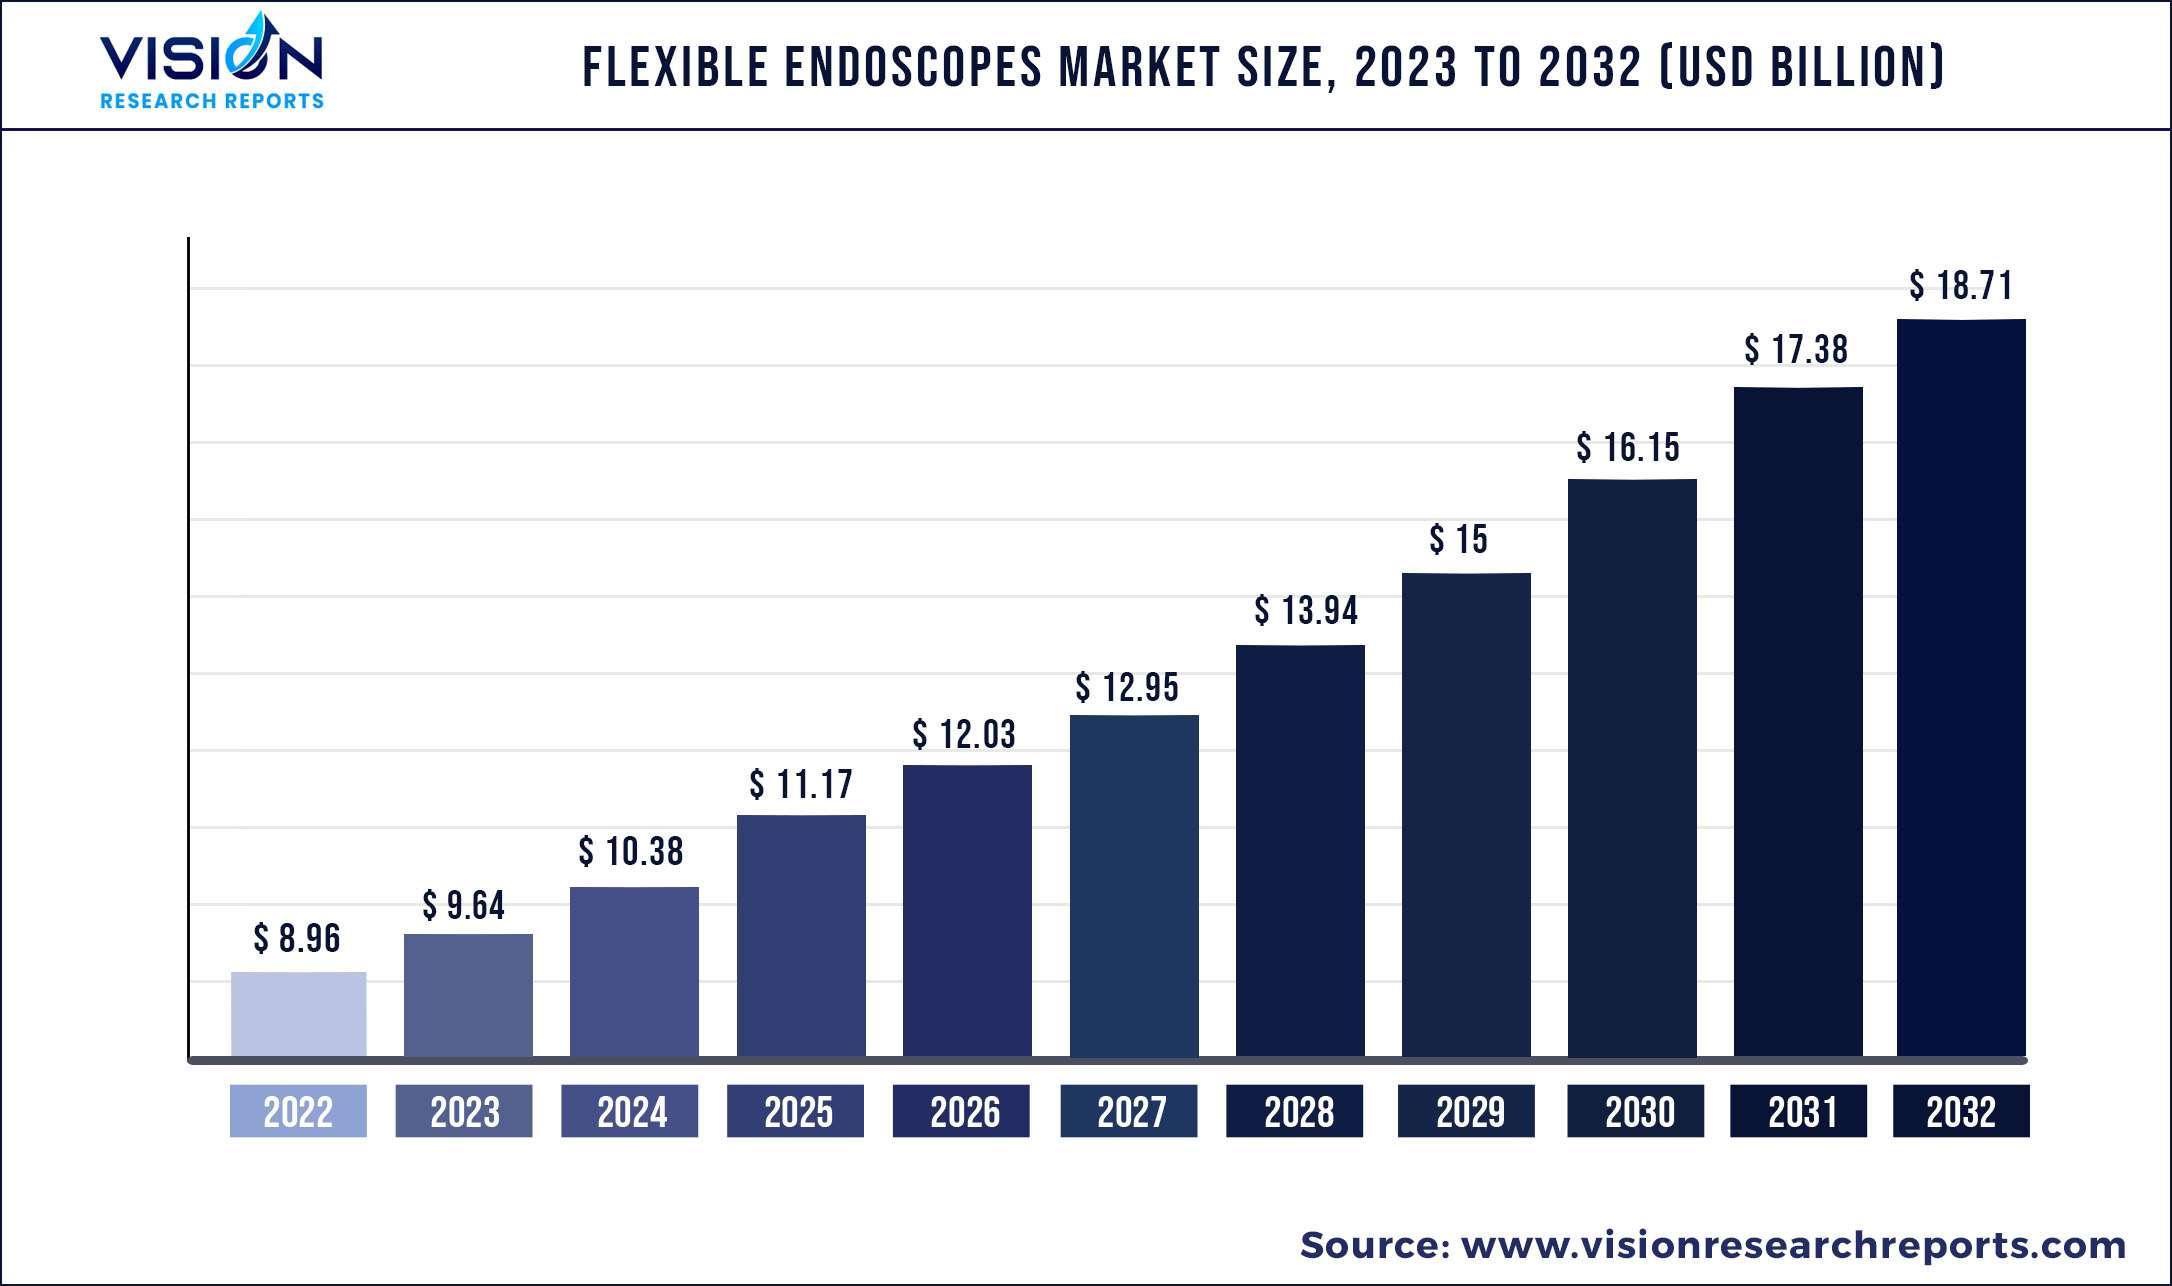 Flexible Endoscopes Market Size 2023 to 2032